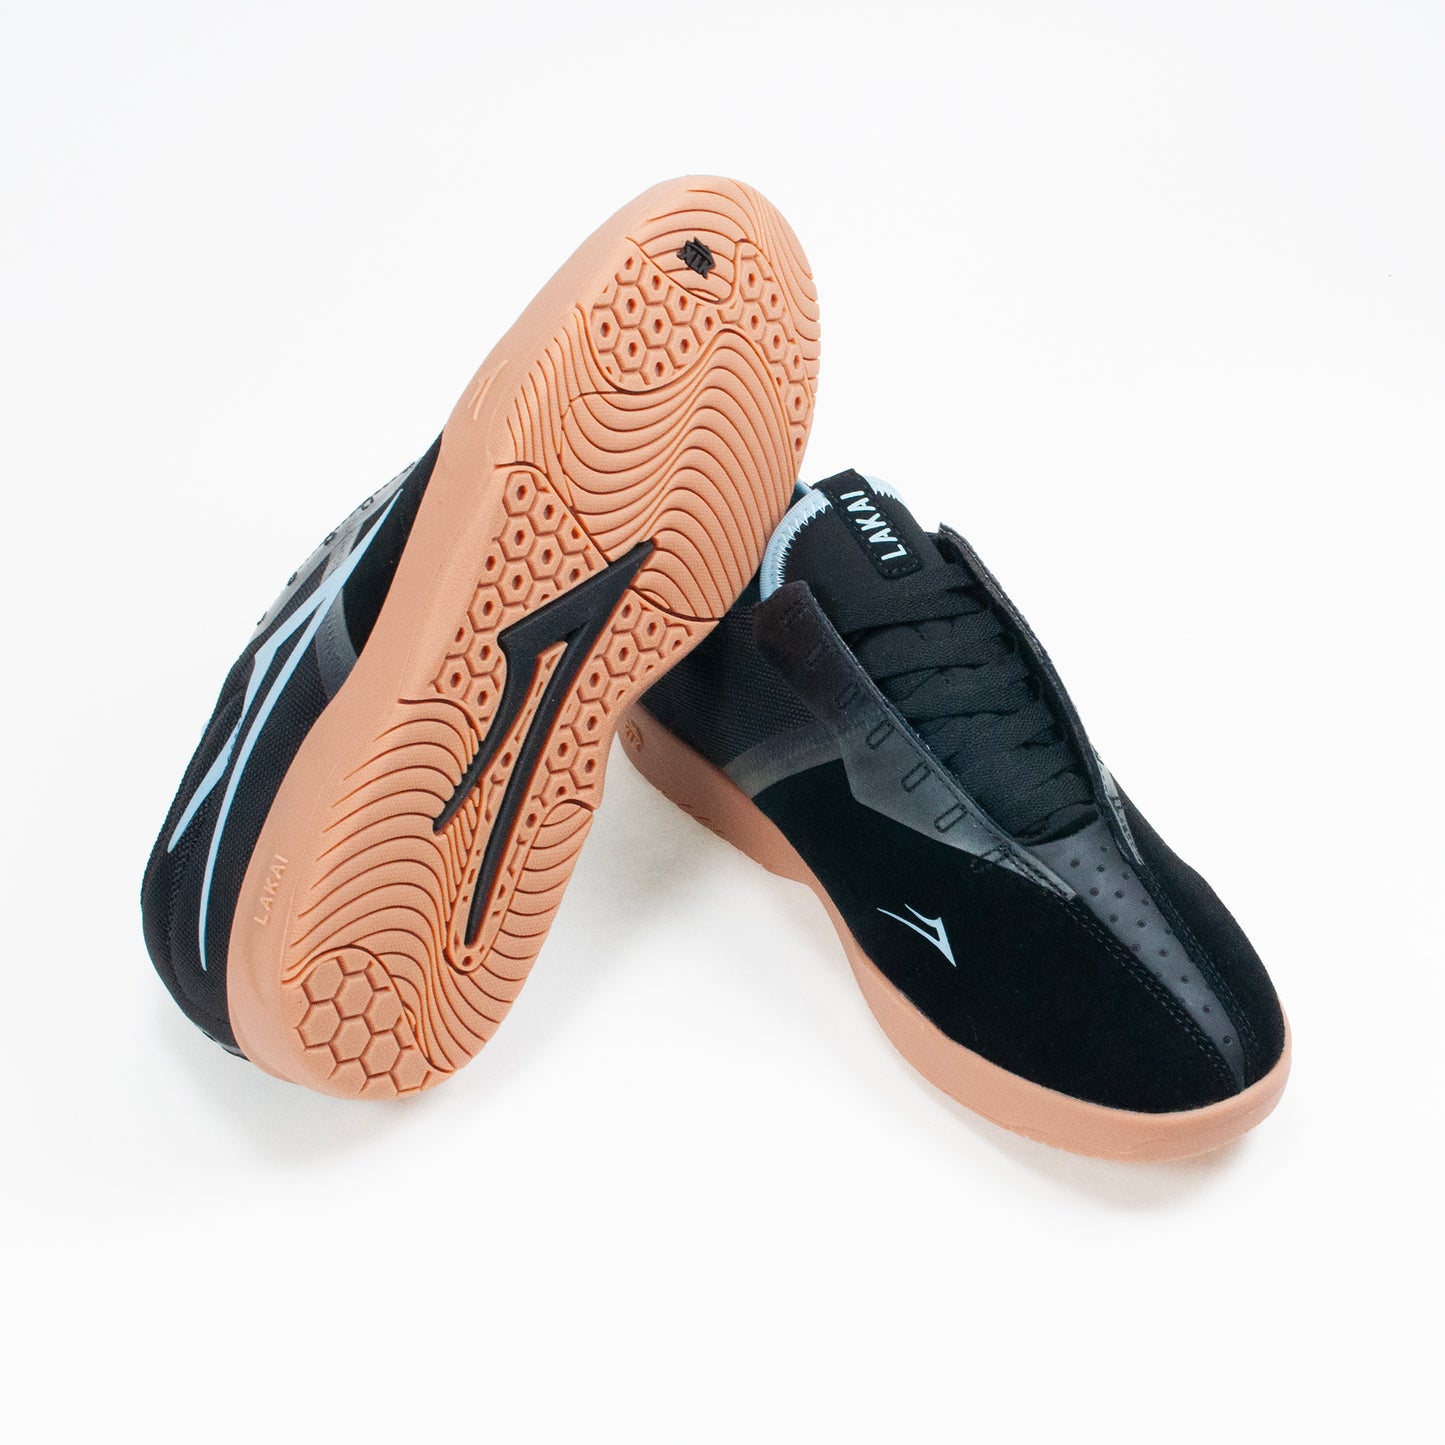 Lakai Mod Cup Skate Shoe - Black/ Gum - Prime Delux Store